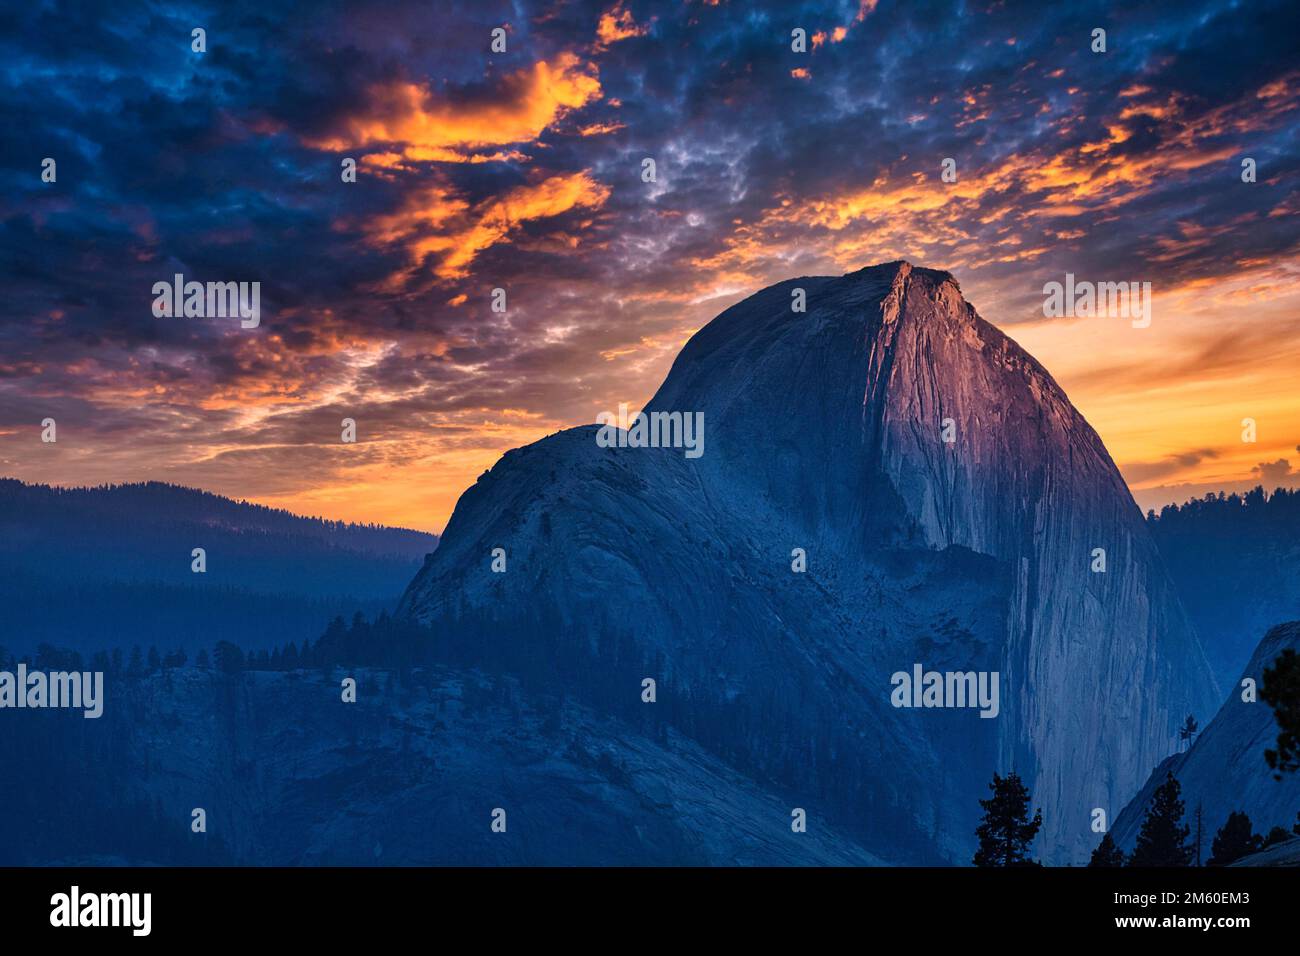 Demi-dôme, montagne en granit, formes rondes, sommet au coucher du soleil, ciel nocturne spectaculaire, Yosemite Valley, Californie, États-Unis Banque D'Images